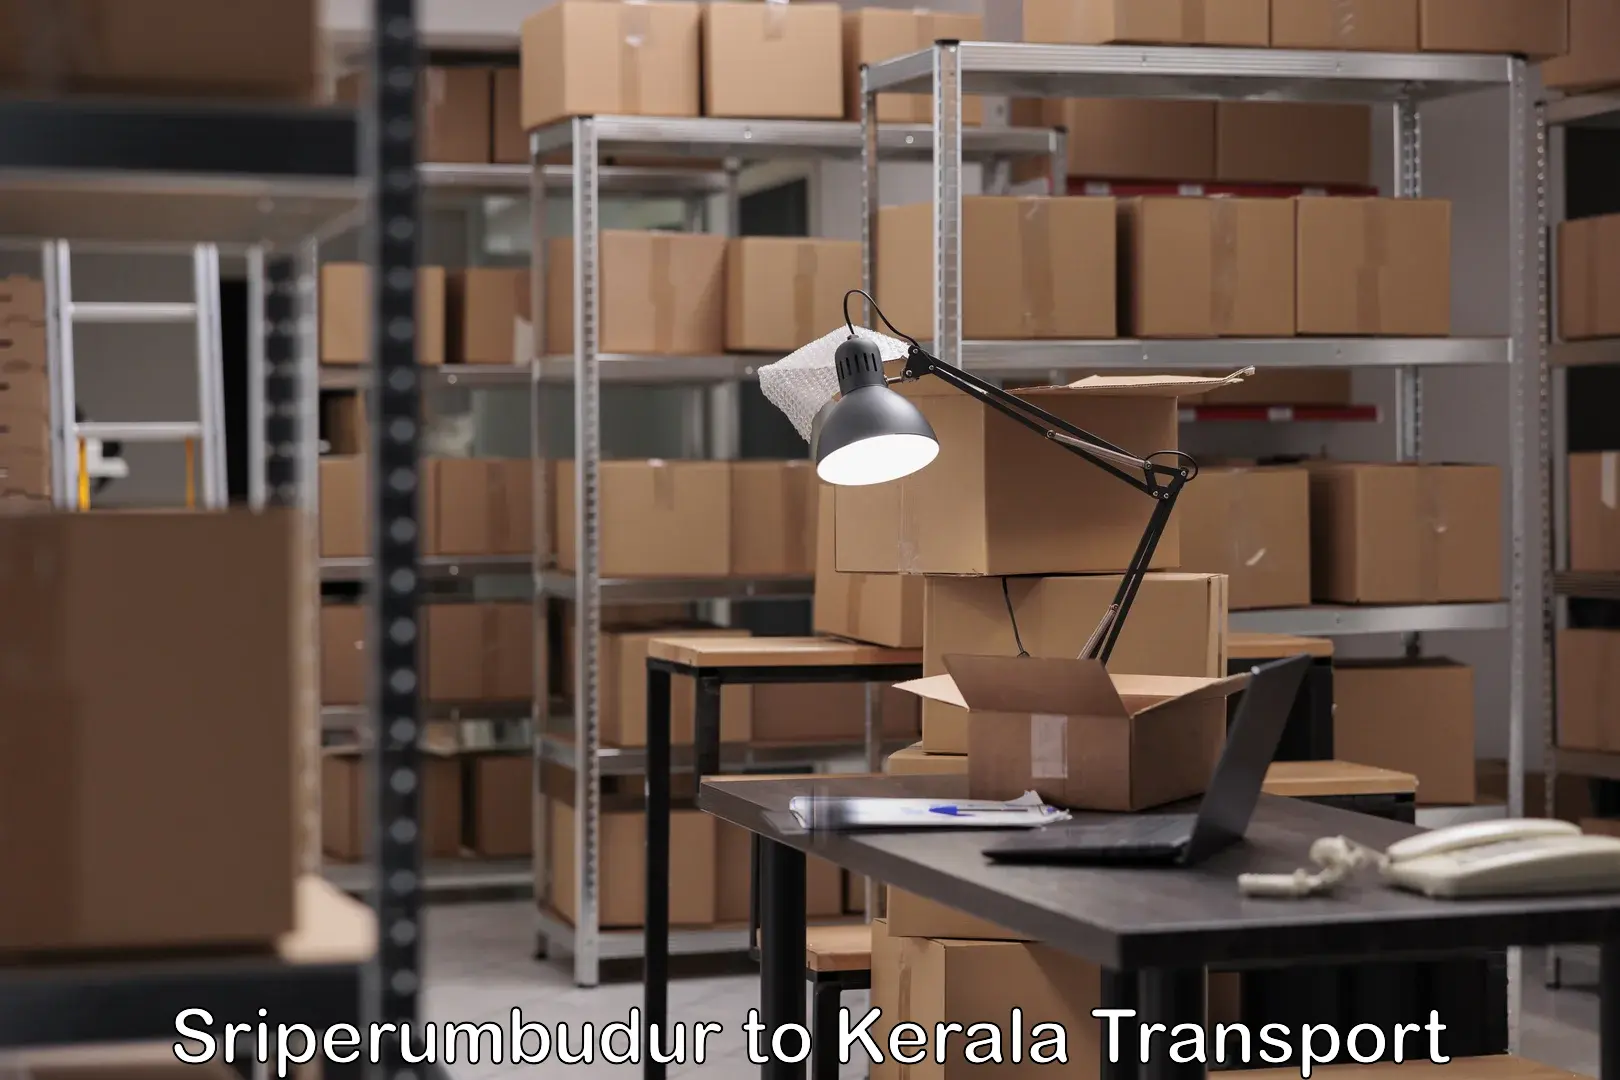 Truck transport companies in India Sriperumbudur to Kerala